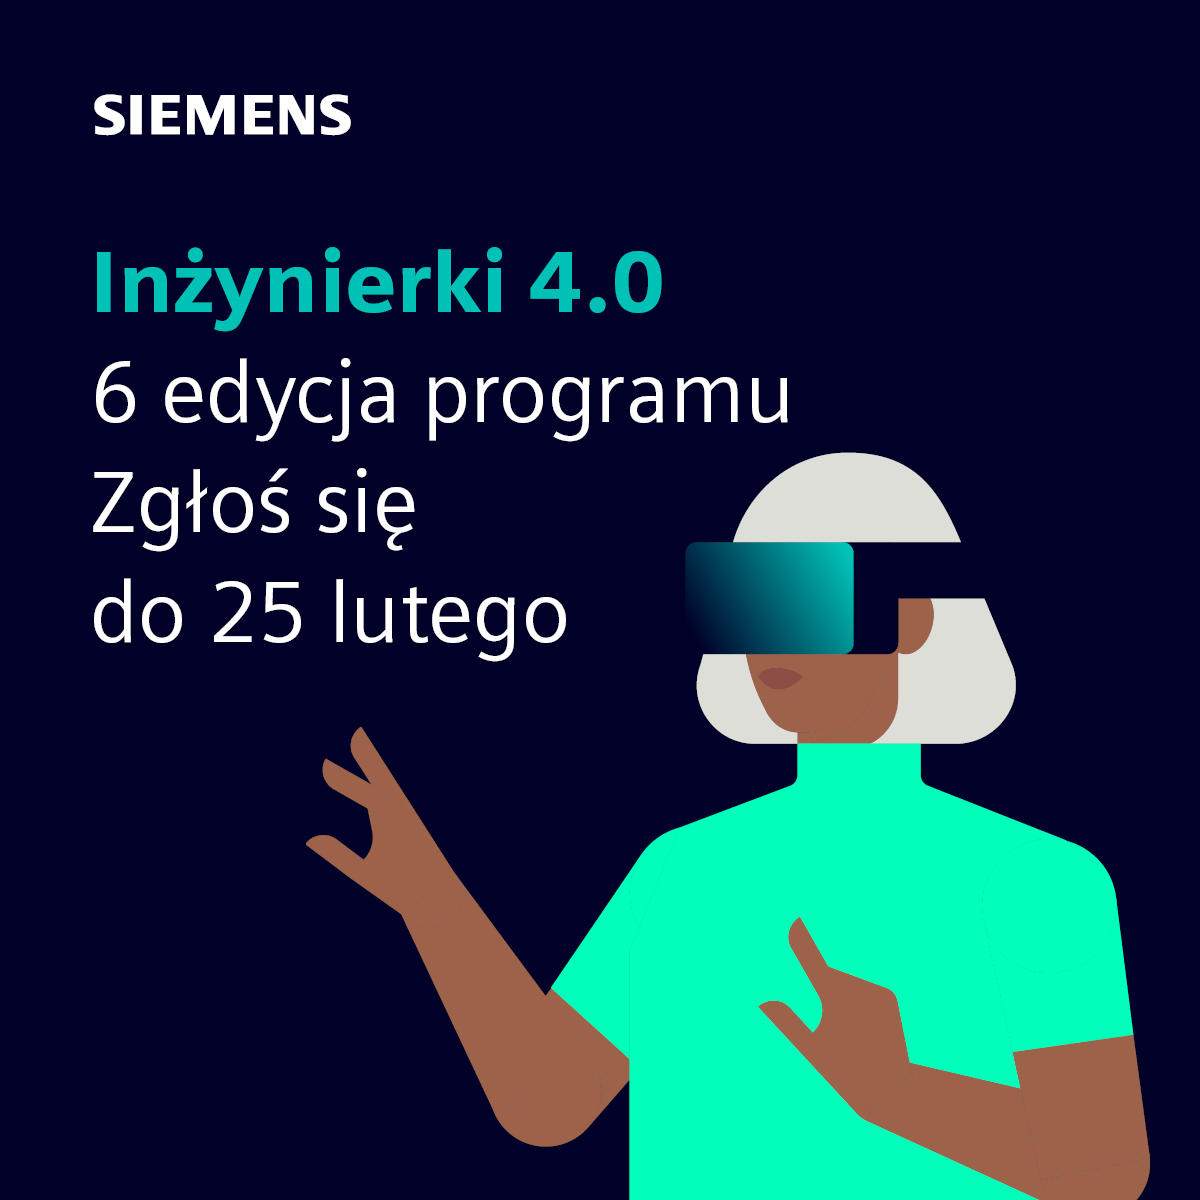 Rusza szósta edycja Programu Inżynierki 4.0 organizowana dla Was przez Siemensa.